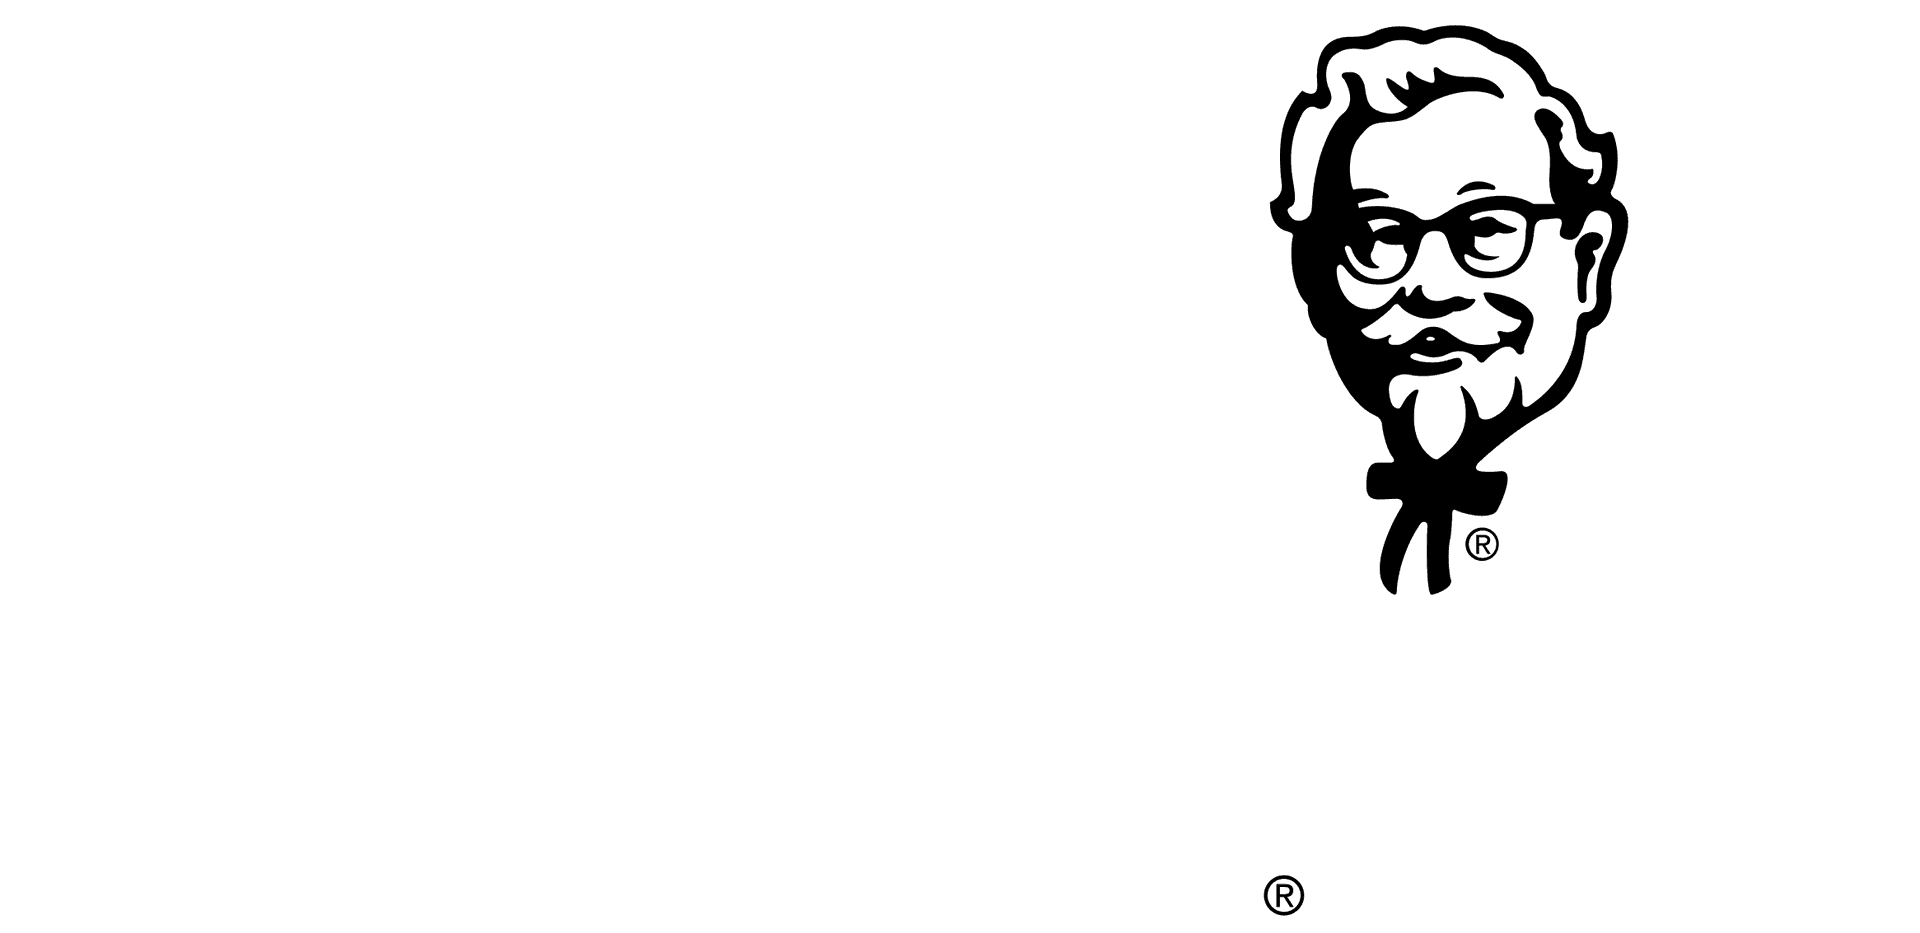 K F C Logo Image PNG